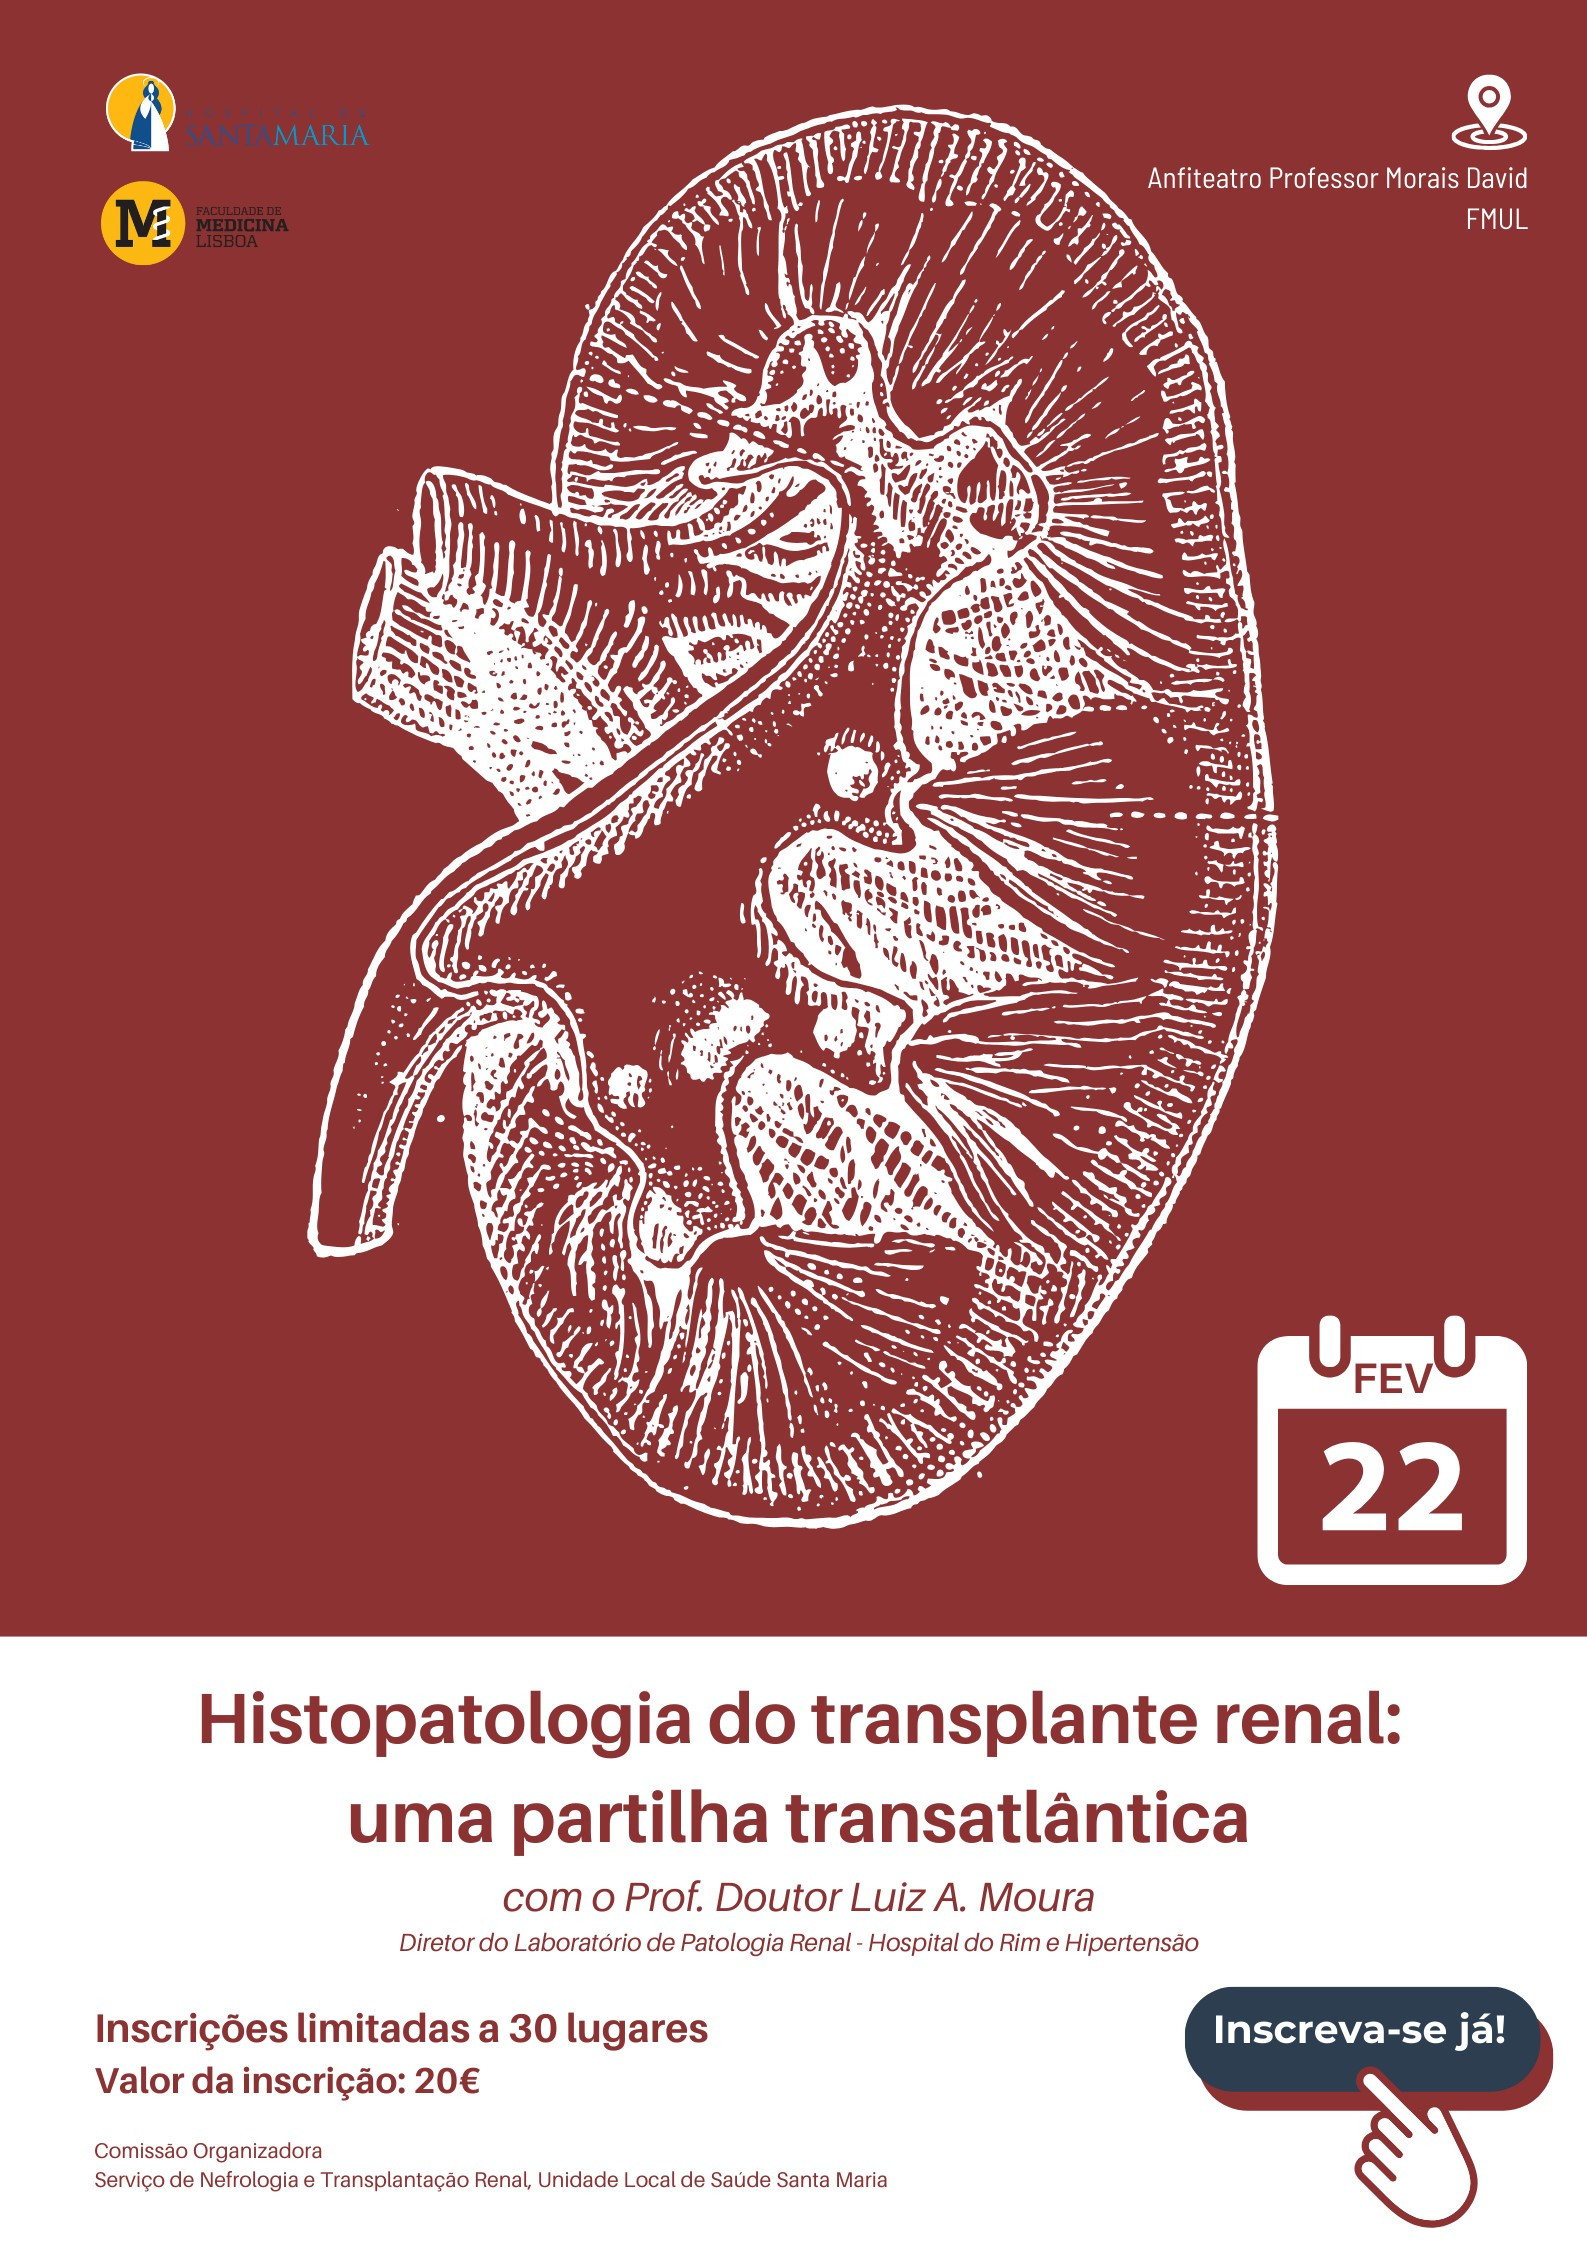 Histopatologia do transplante renal: uma partilha transatlântica